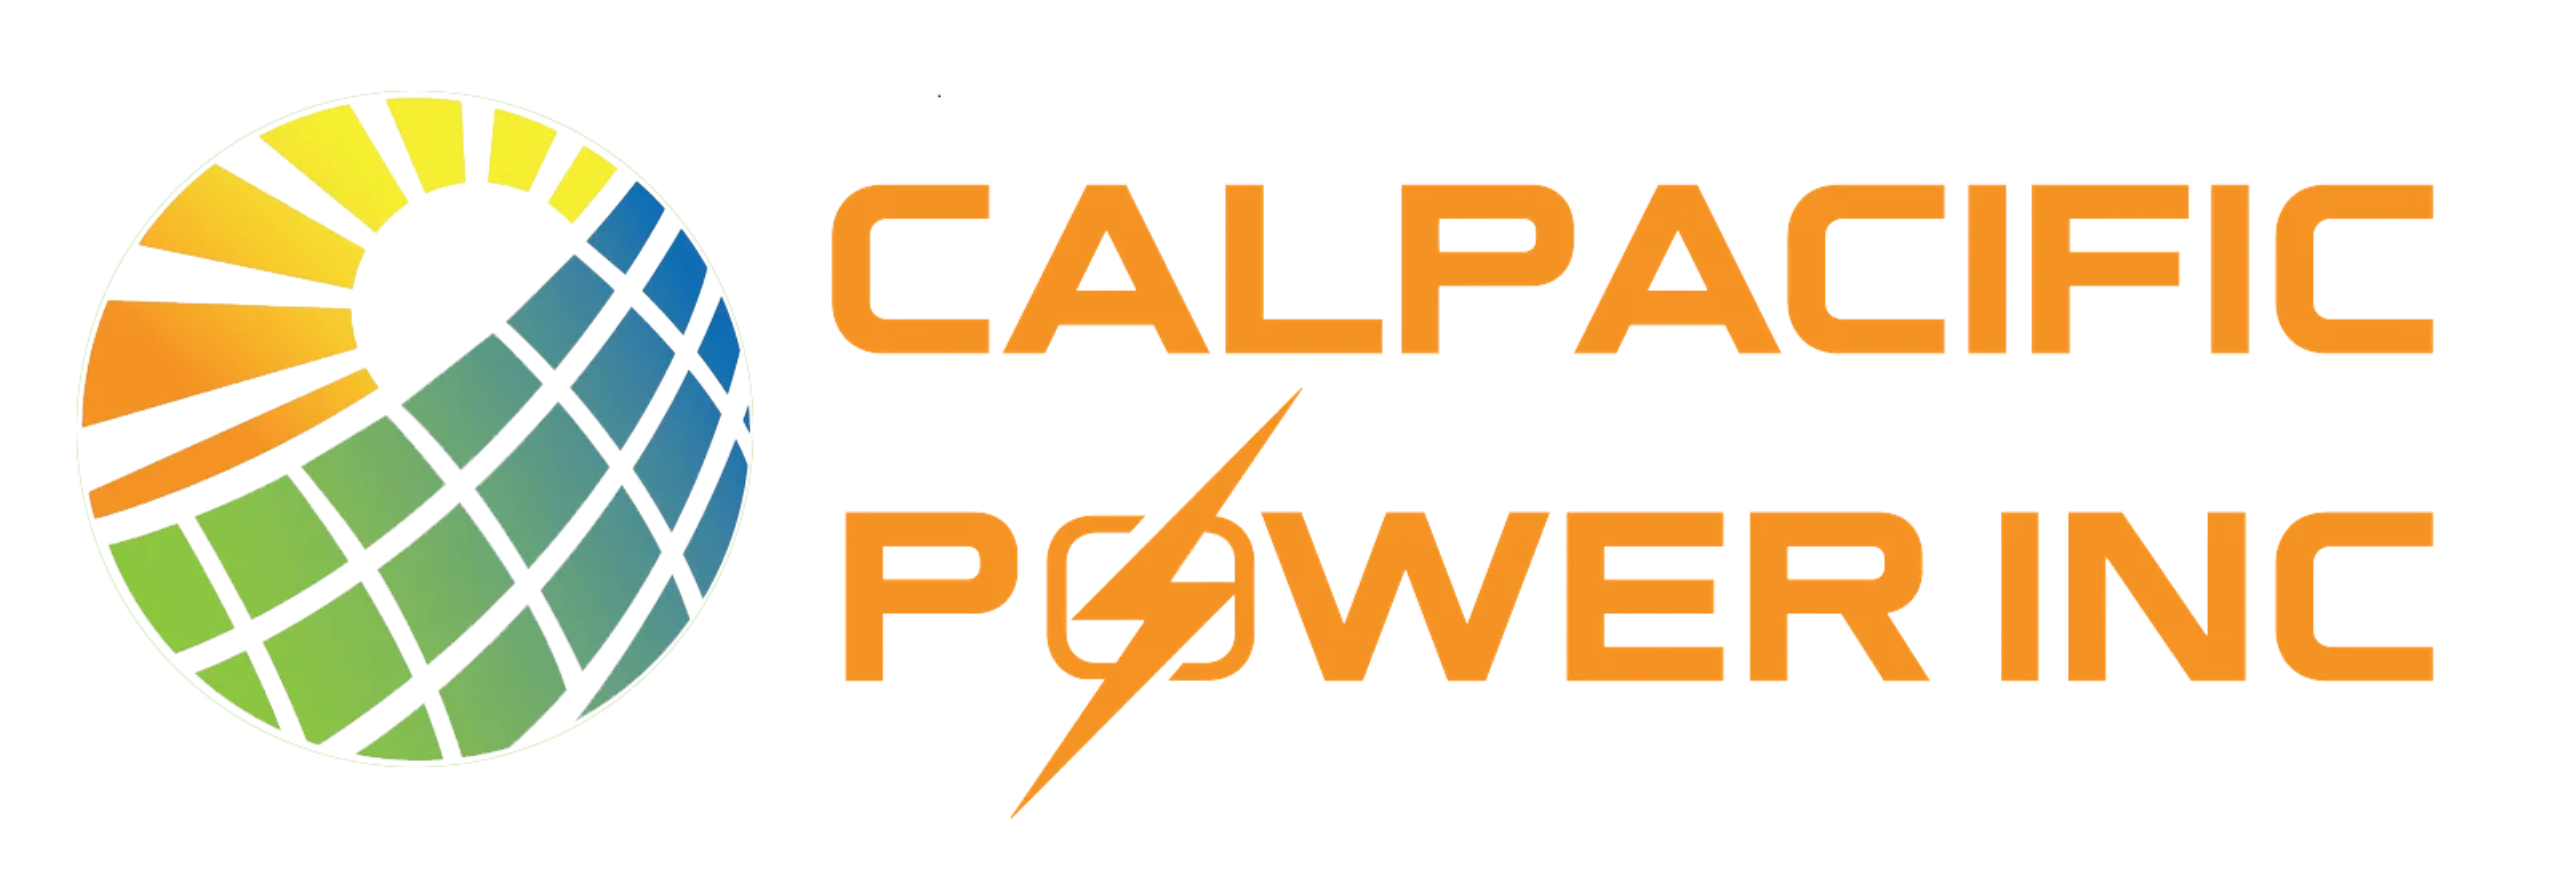 Calpacific Power Inc Logo